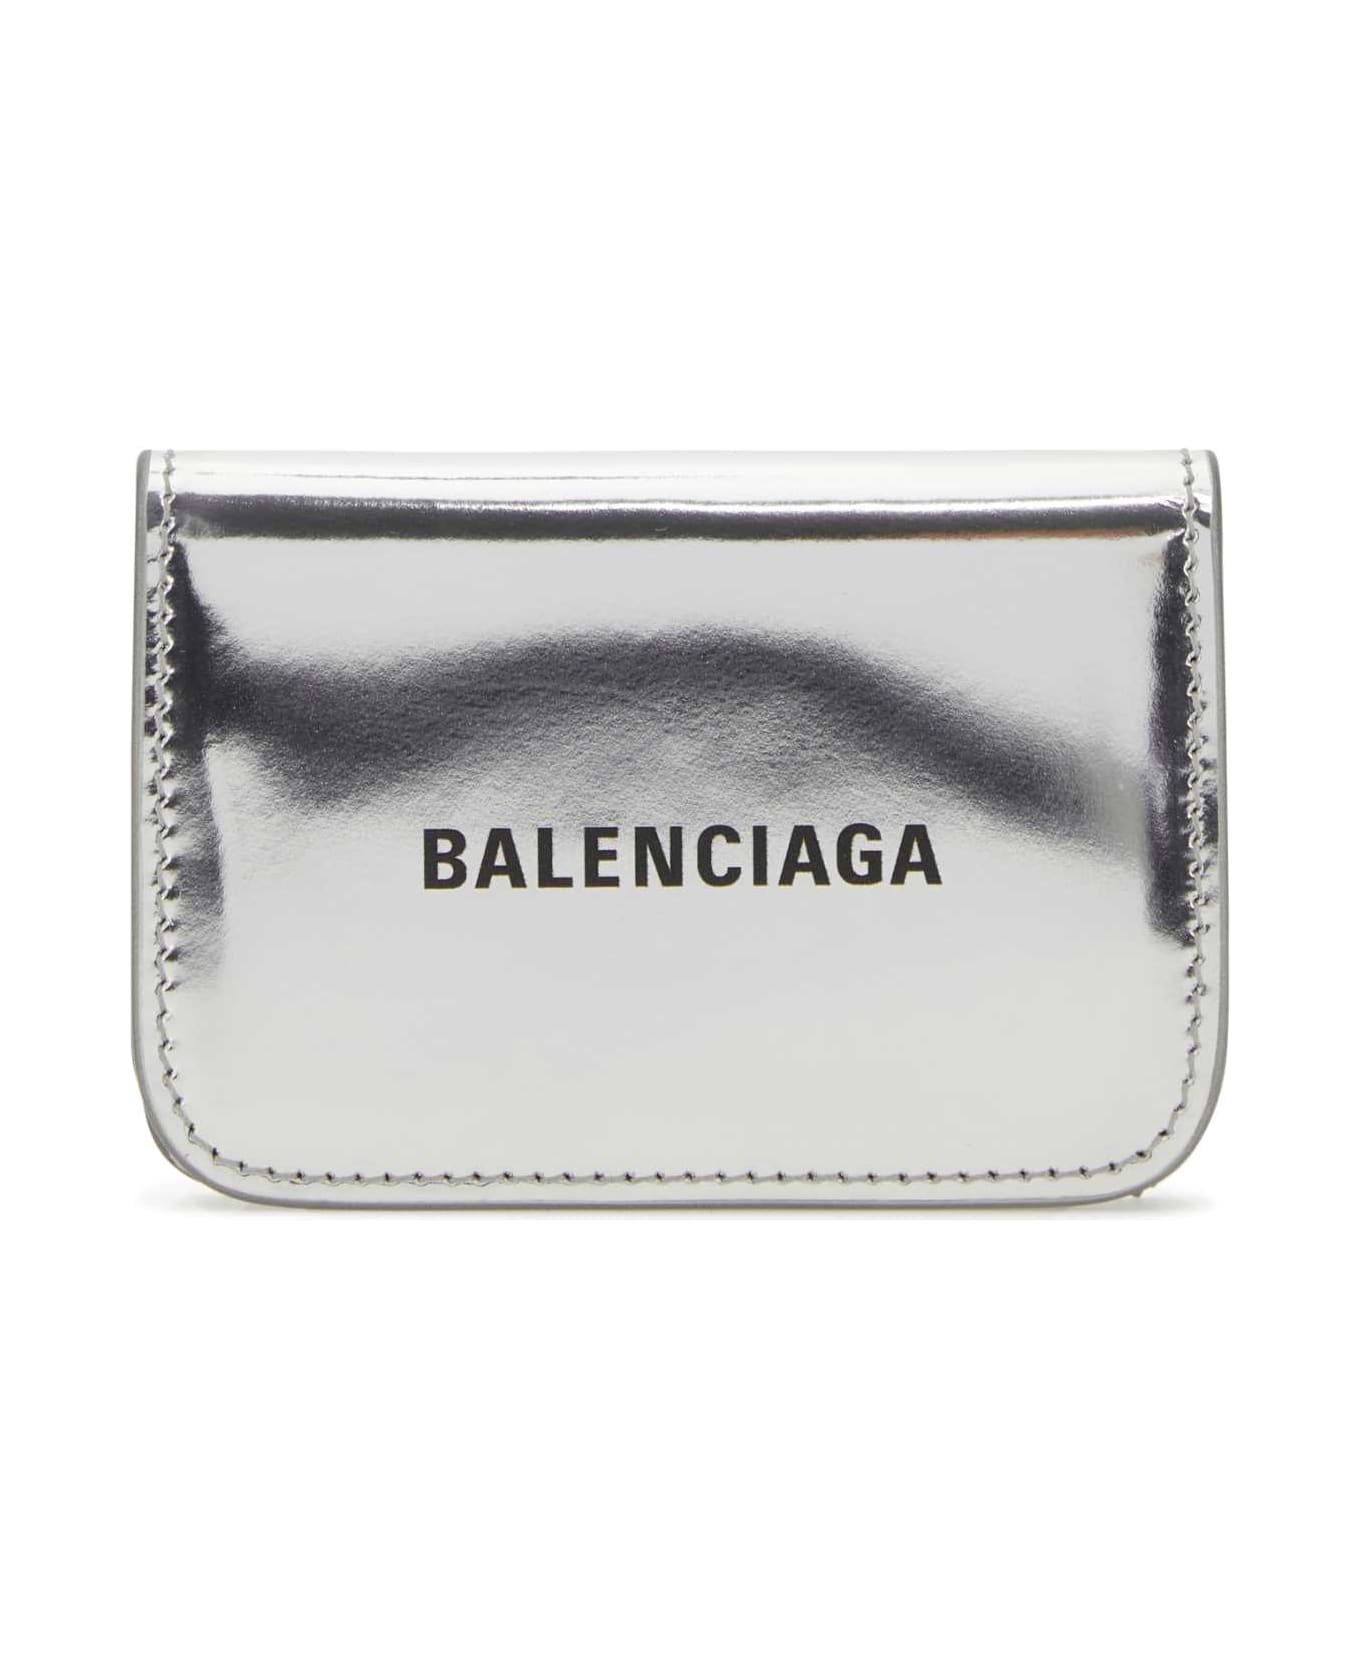 Balenciaga Silver Leather Wallet - 8160